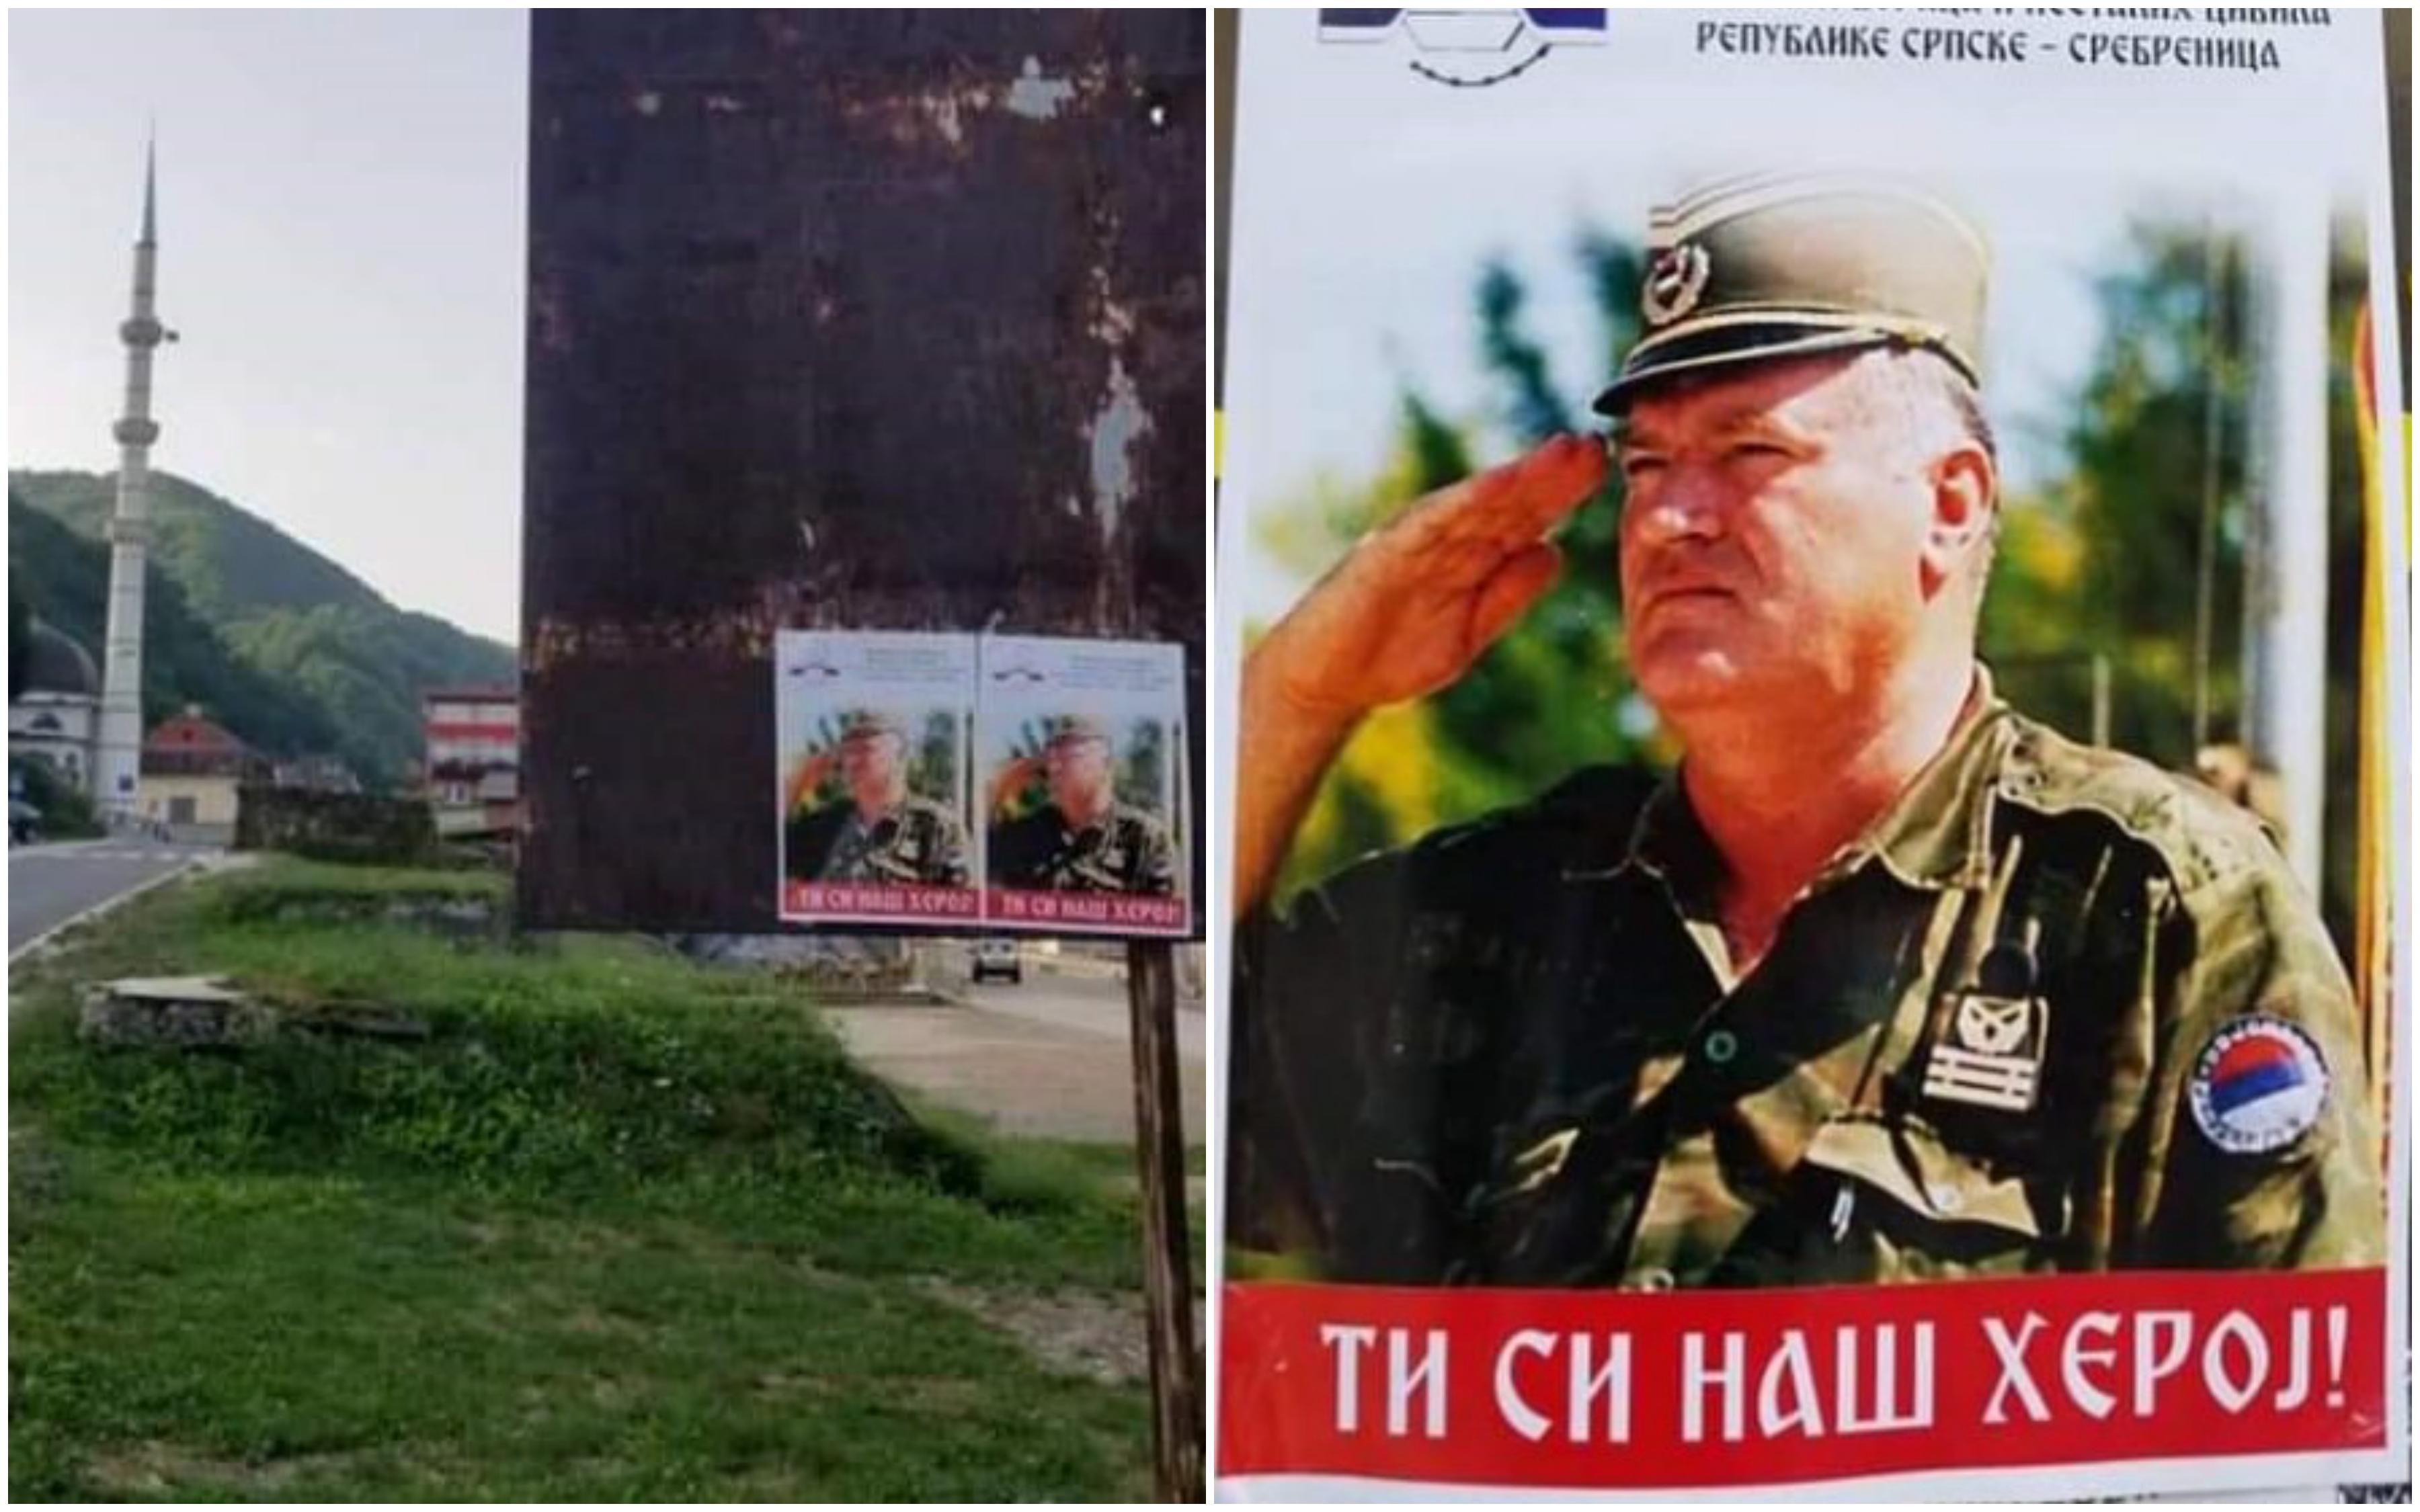 Nove provokacije u Srebrenici: U blizini džamije osvanuli plakati zločinca Ratka Mladića